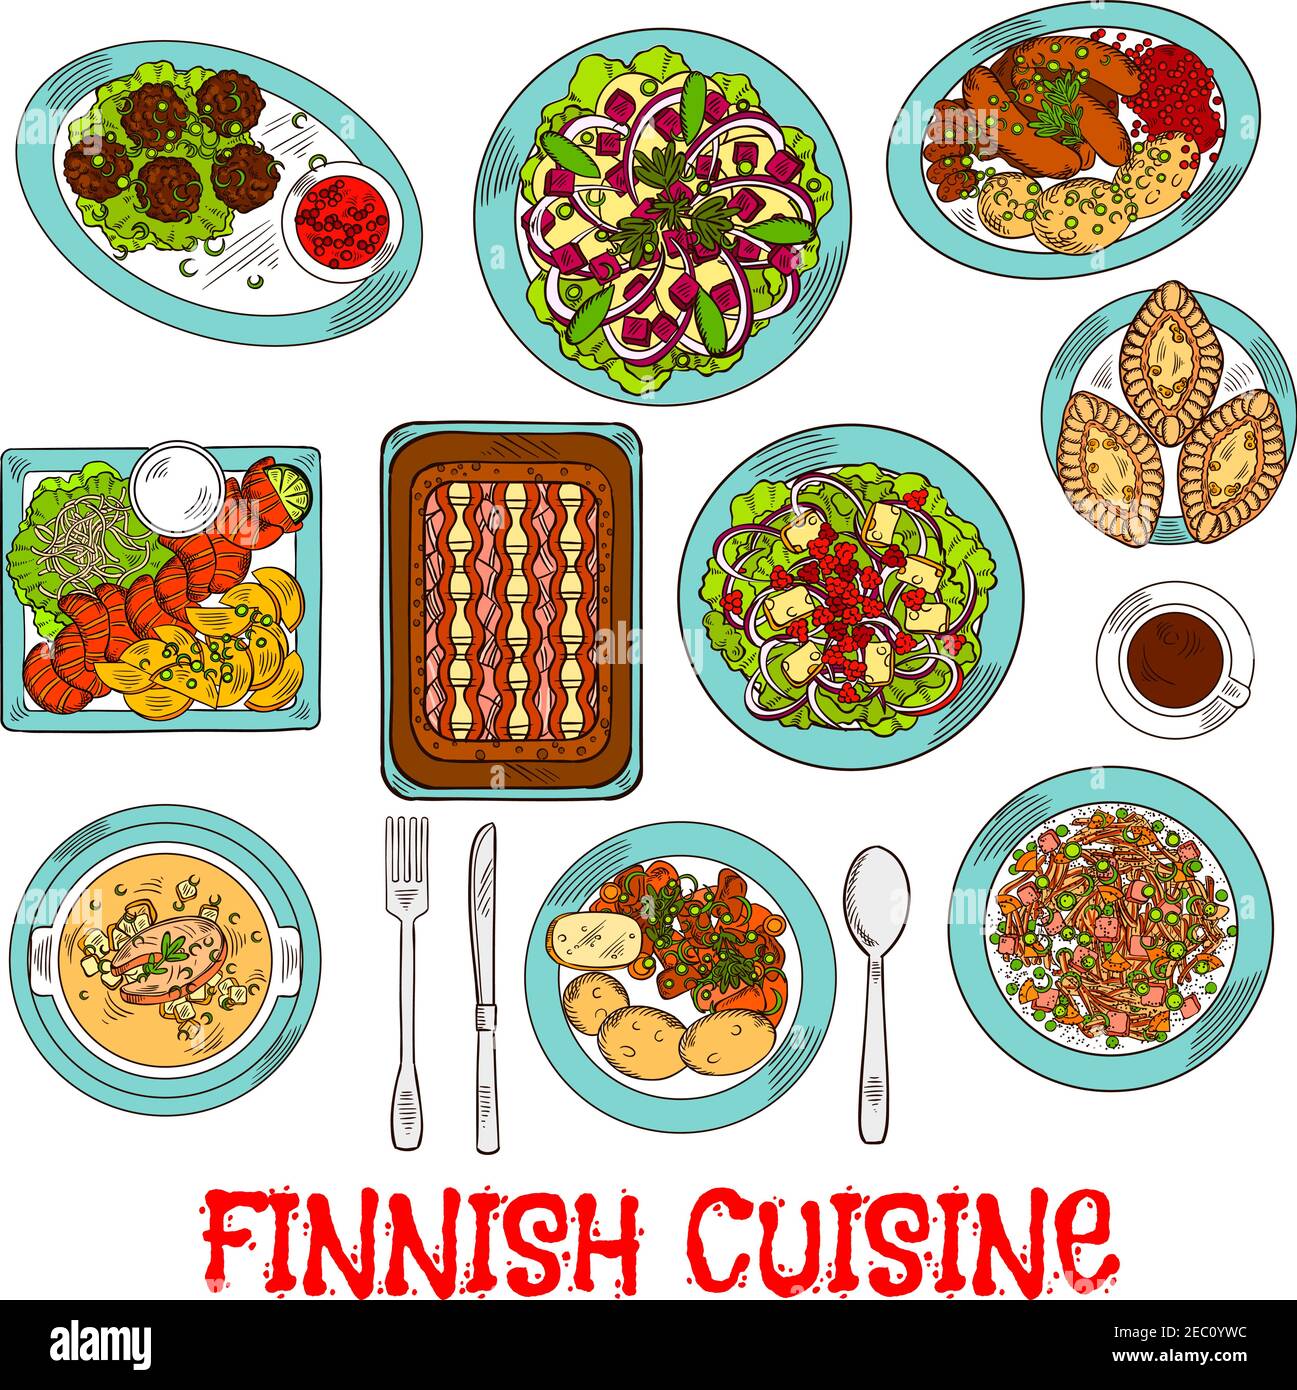 Piatti della cucina nazionale finlandese con salmone affumicato e verdure, torte di riso e pesce di segala, salsicce e polpette con marmellata di frutti di bosco, cavolo e renne Illustrazione Vettoriale